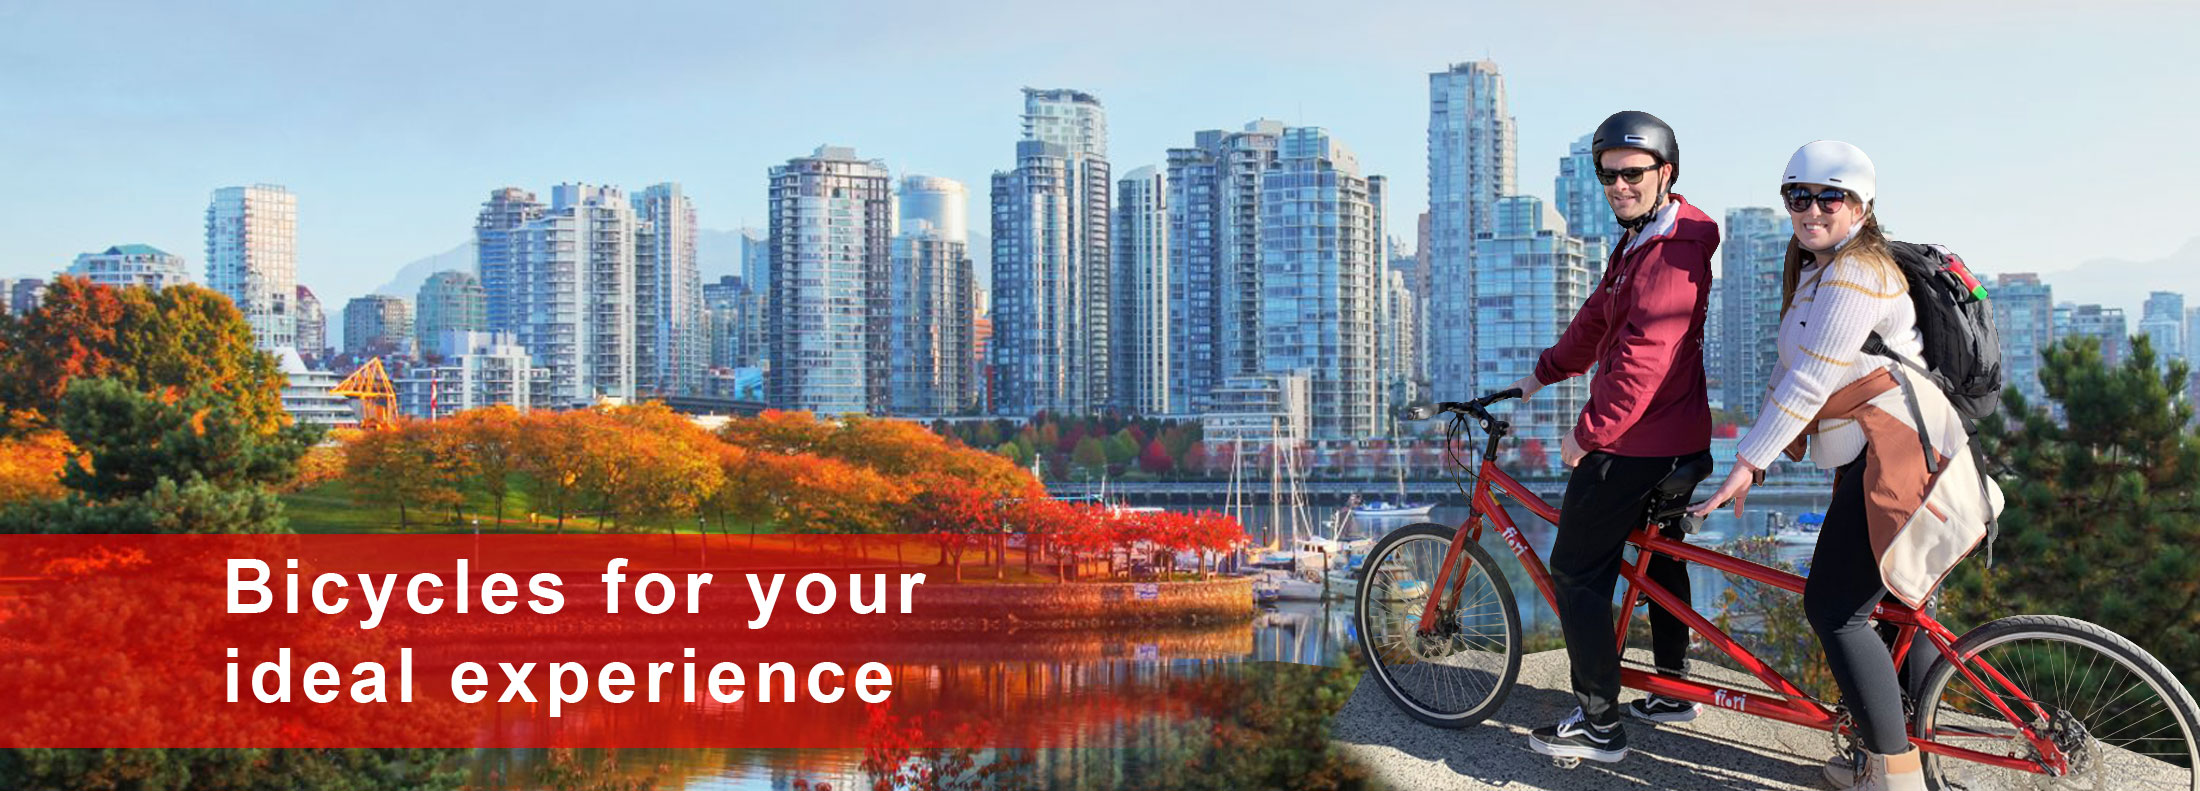 Stanley Park Bike Rental | Bikes Rent Vancouver | Bike Rental Vancouver | Stanley Park Bikes | Stanley Park Bicycle Rental | Bicycles Rent Vancouver | Bicycle Rental Vancouver | Stanley Park Bicycles | Seawall Bike Rental | Seawall Bikes | Seawall Bicycle Rental | Seawall Bicycles